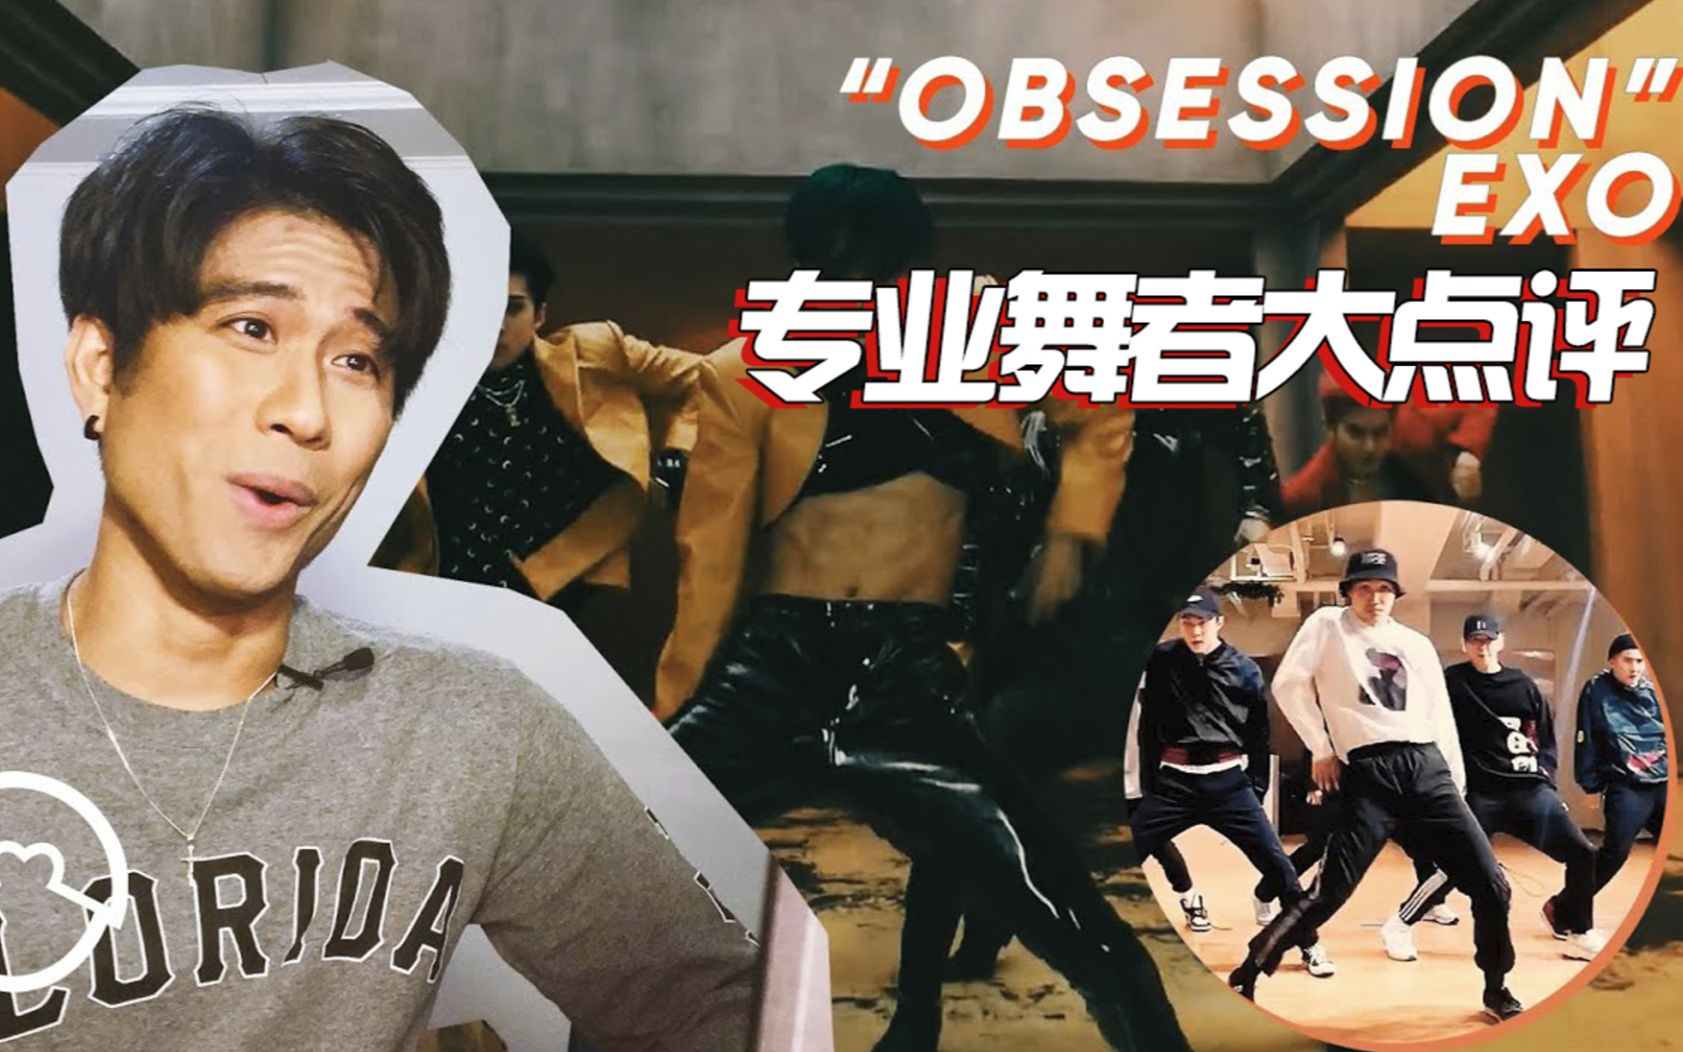 第一次认真看就被圈粉？专业舞者点评EXO《Obsession》MV+练习室，真是视觉盛宴！